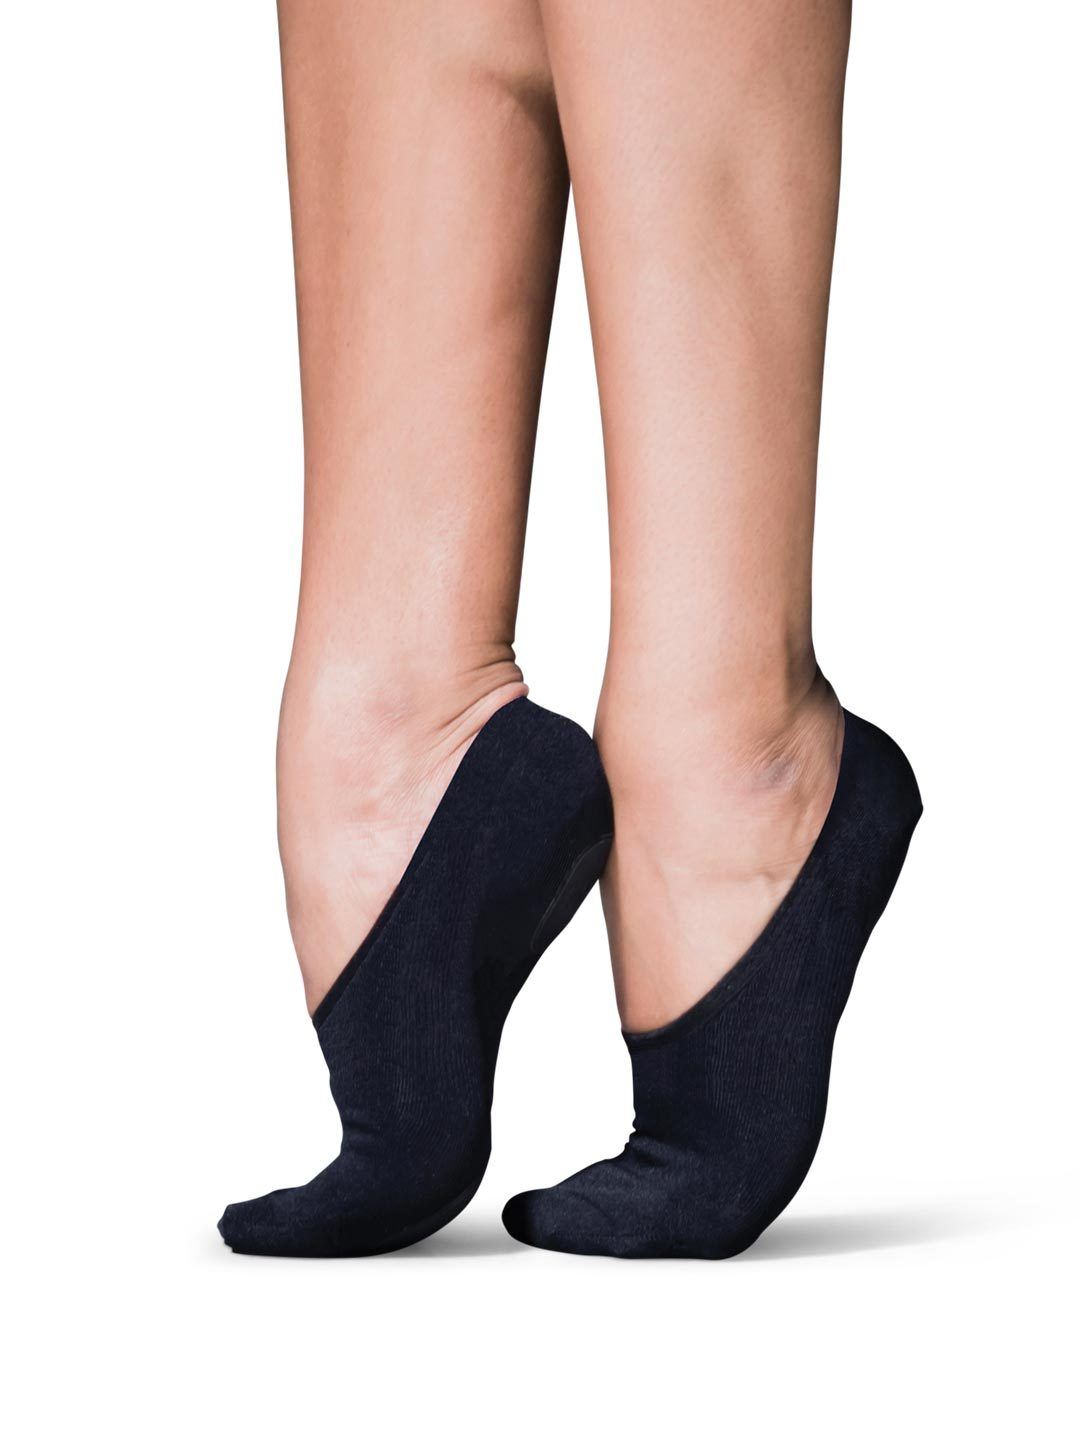  Women's Socks & Hosiery - Capezio / Women's Socks